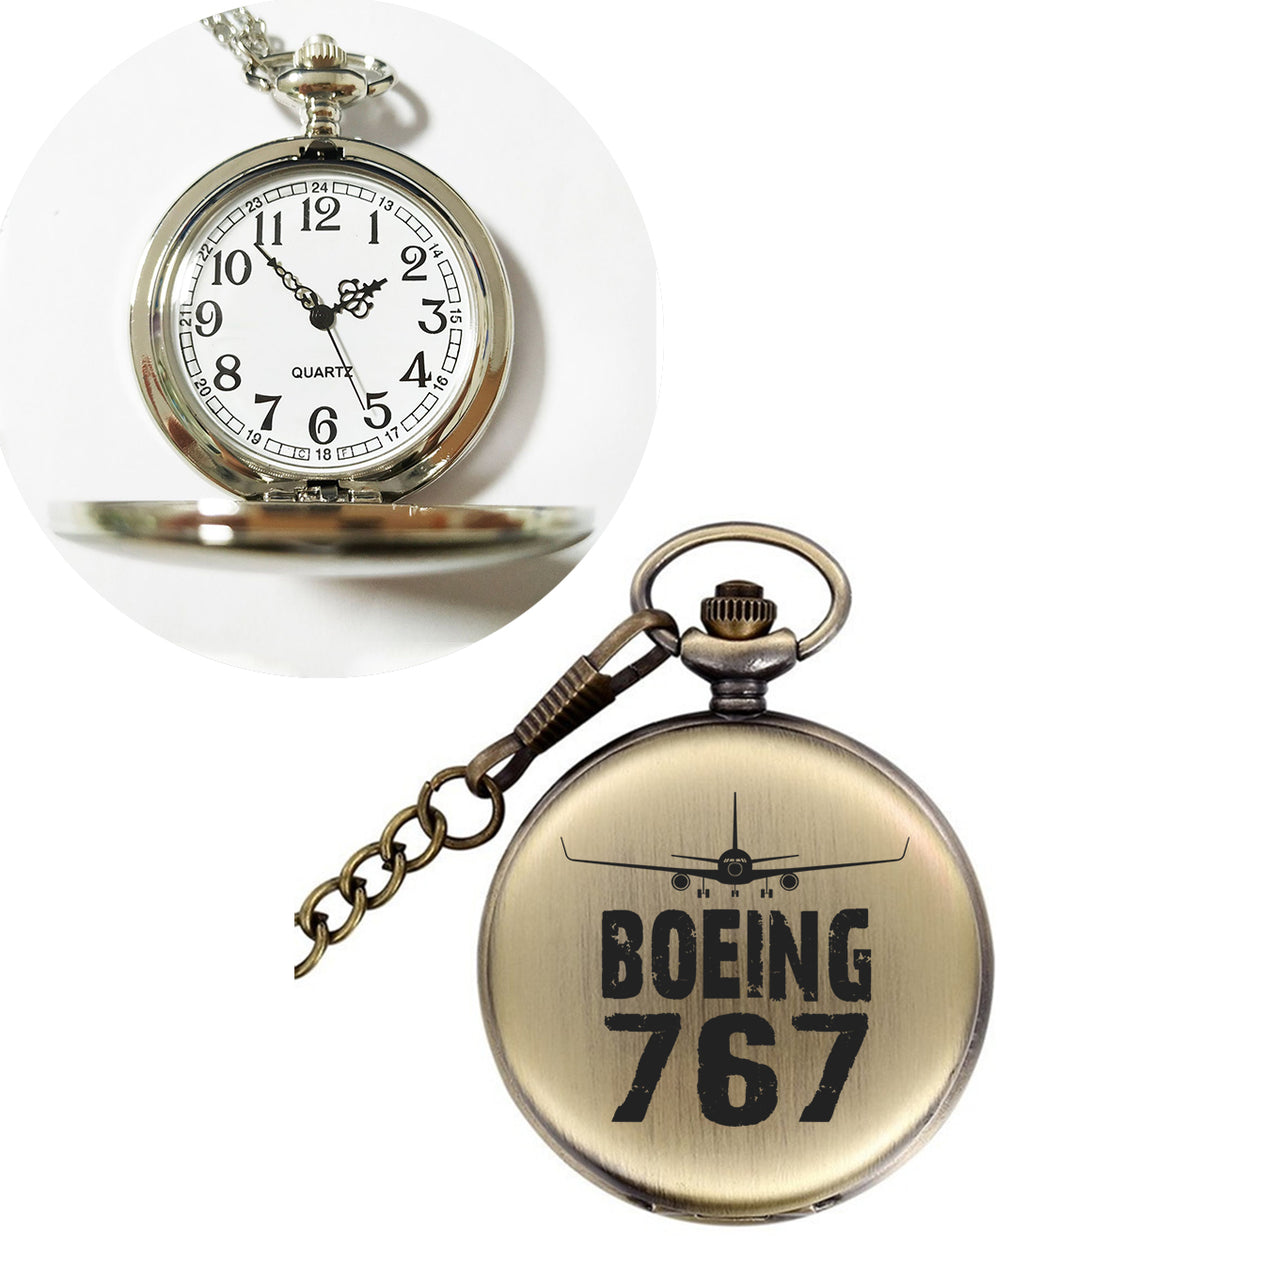 Boeing 767 & Plane Designed Pocket Watches